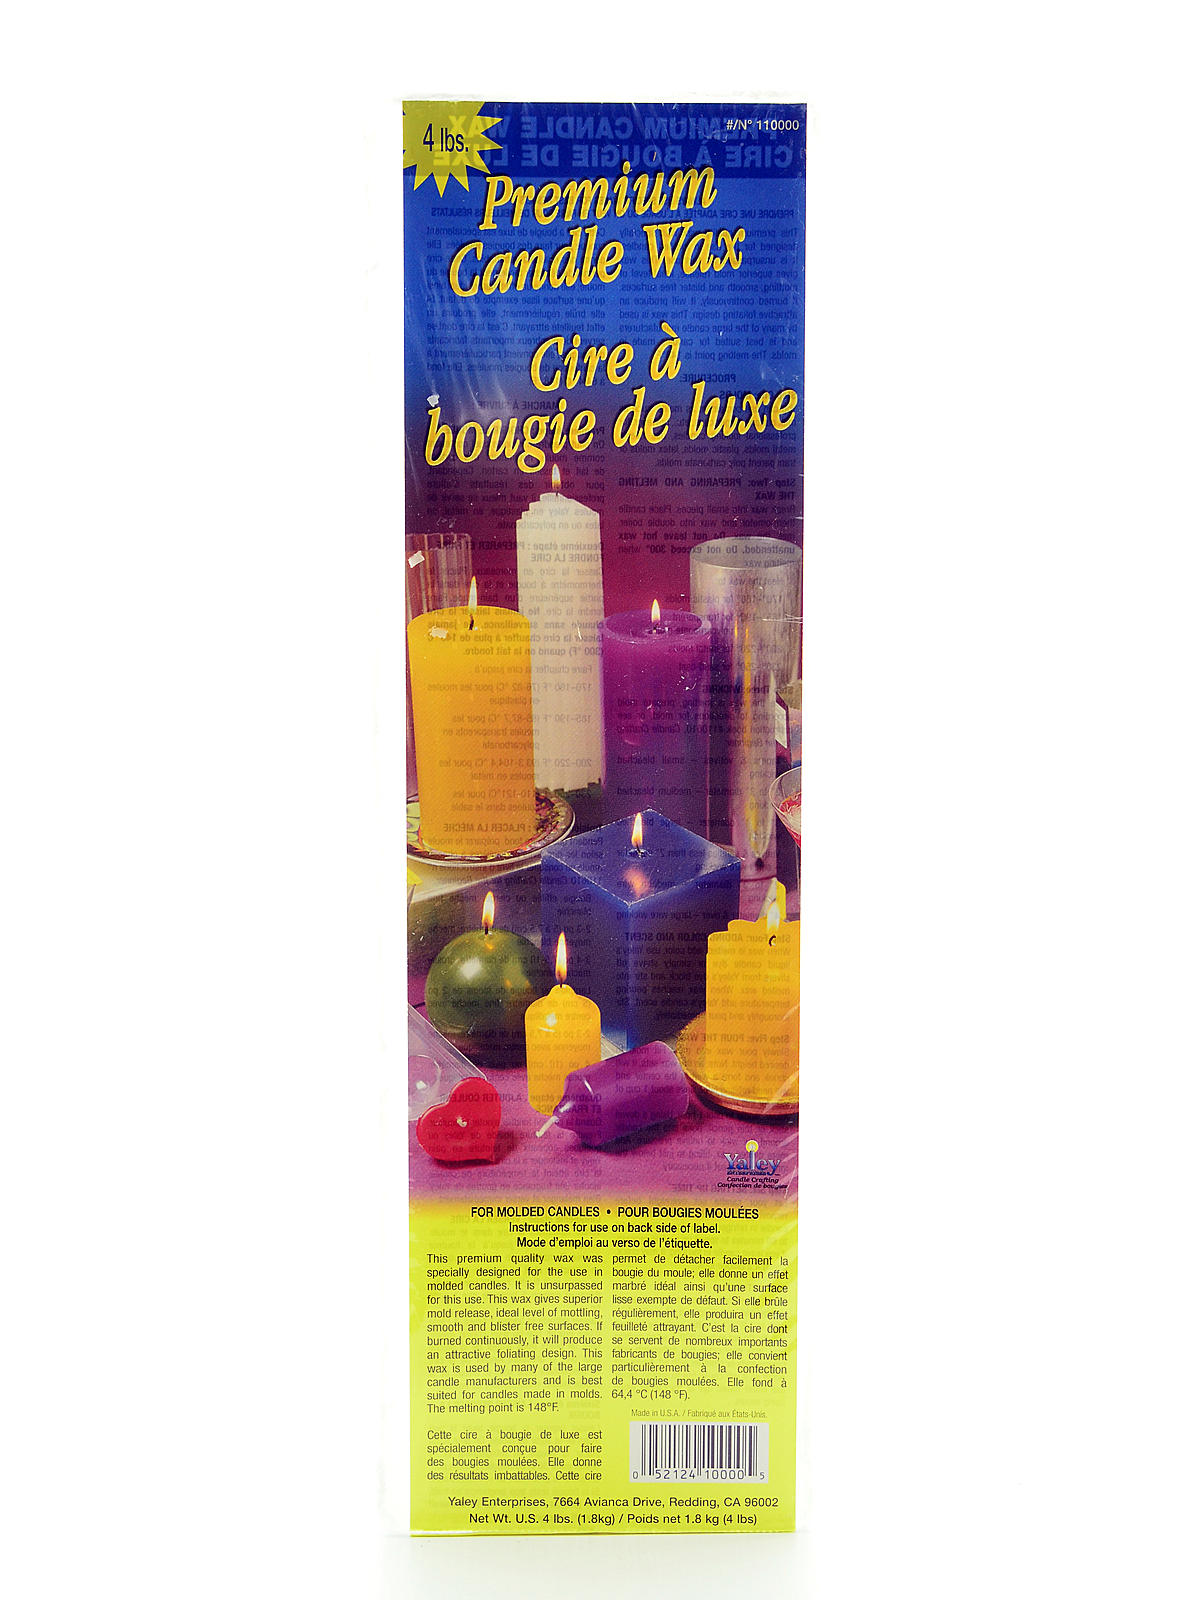 Premium Candle Wax 4 Lb. Block